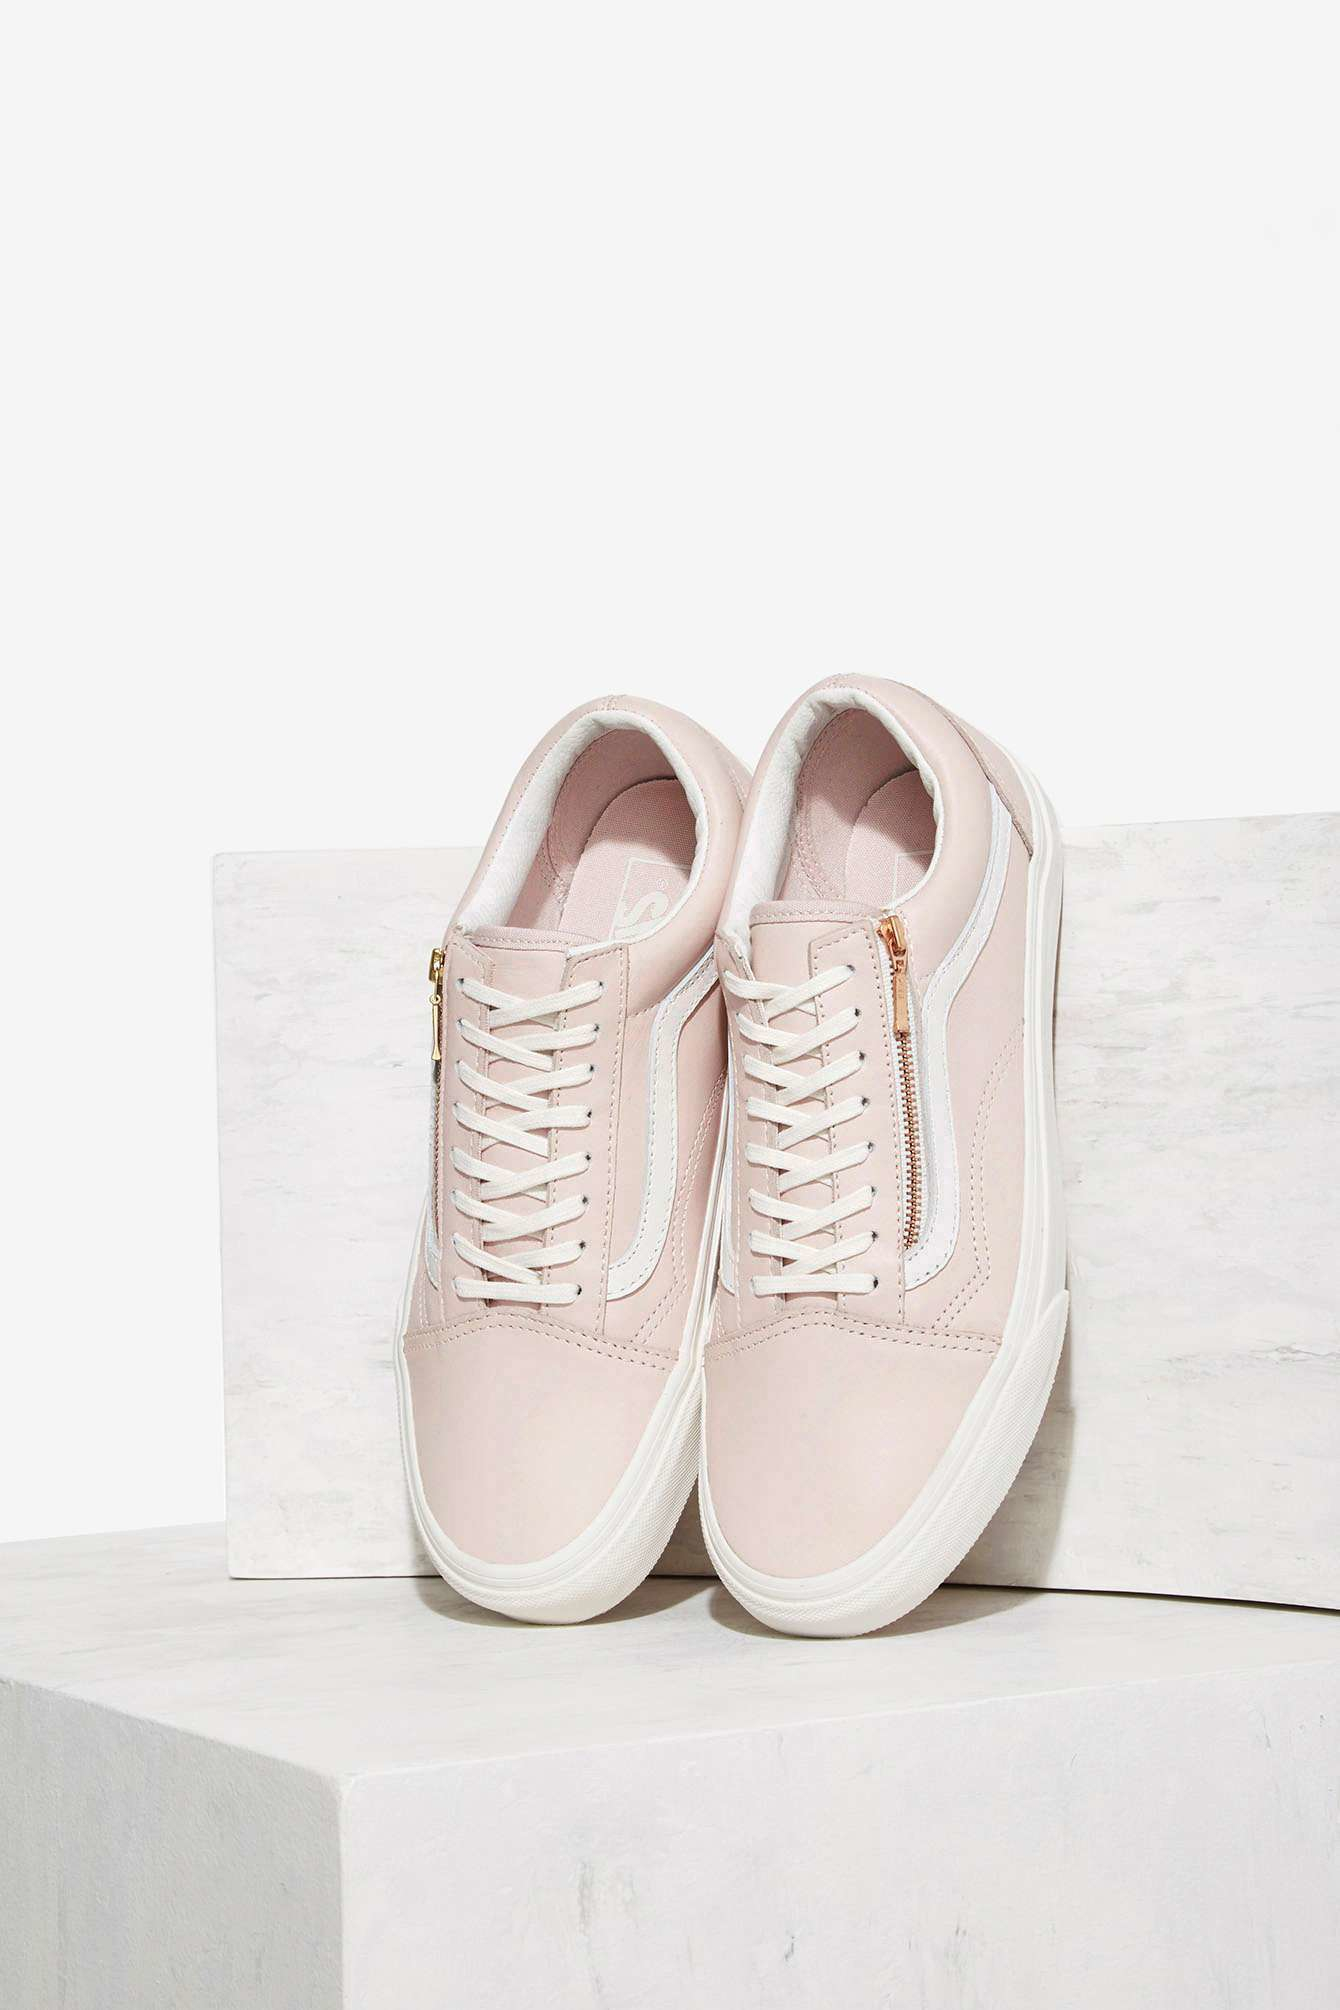 Lyst - Vans Old Skool Zip Leather Sneaker in Pink